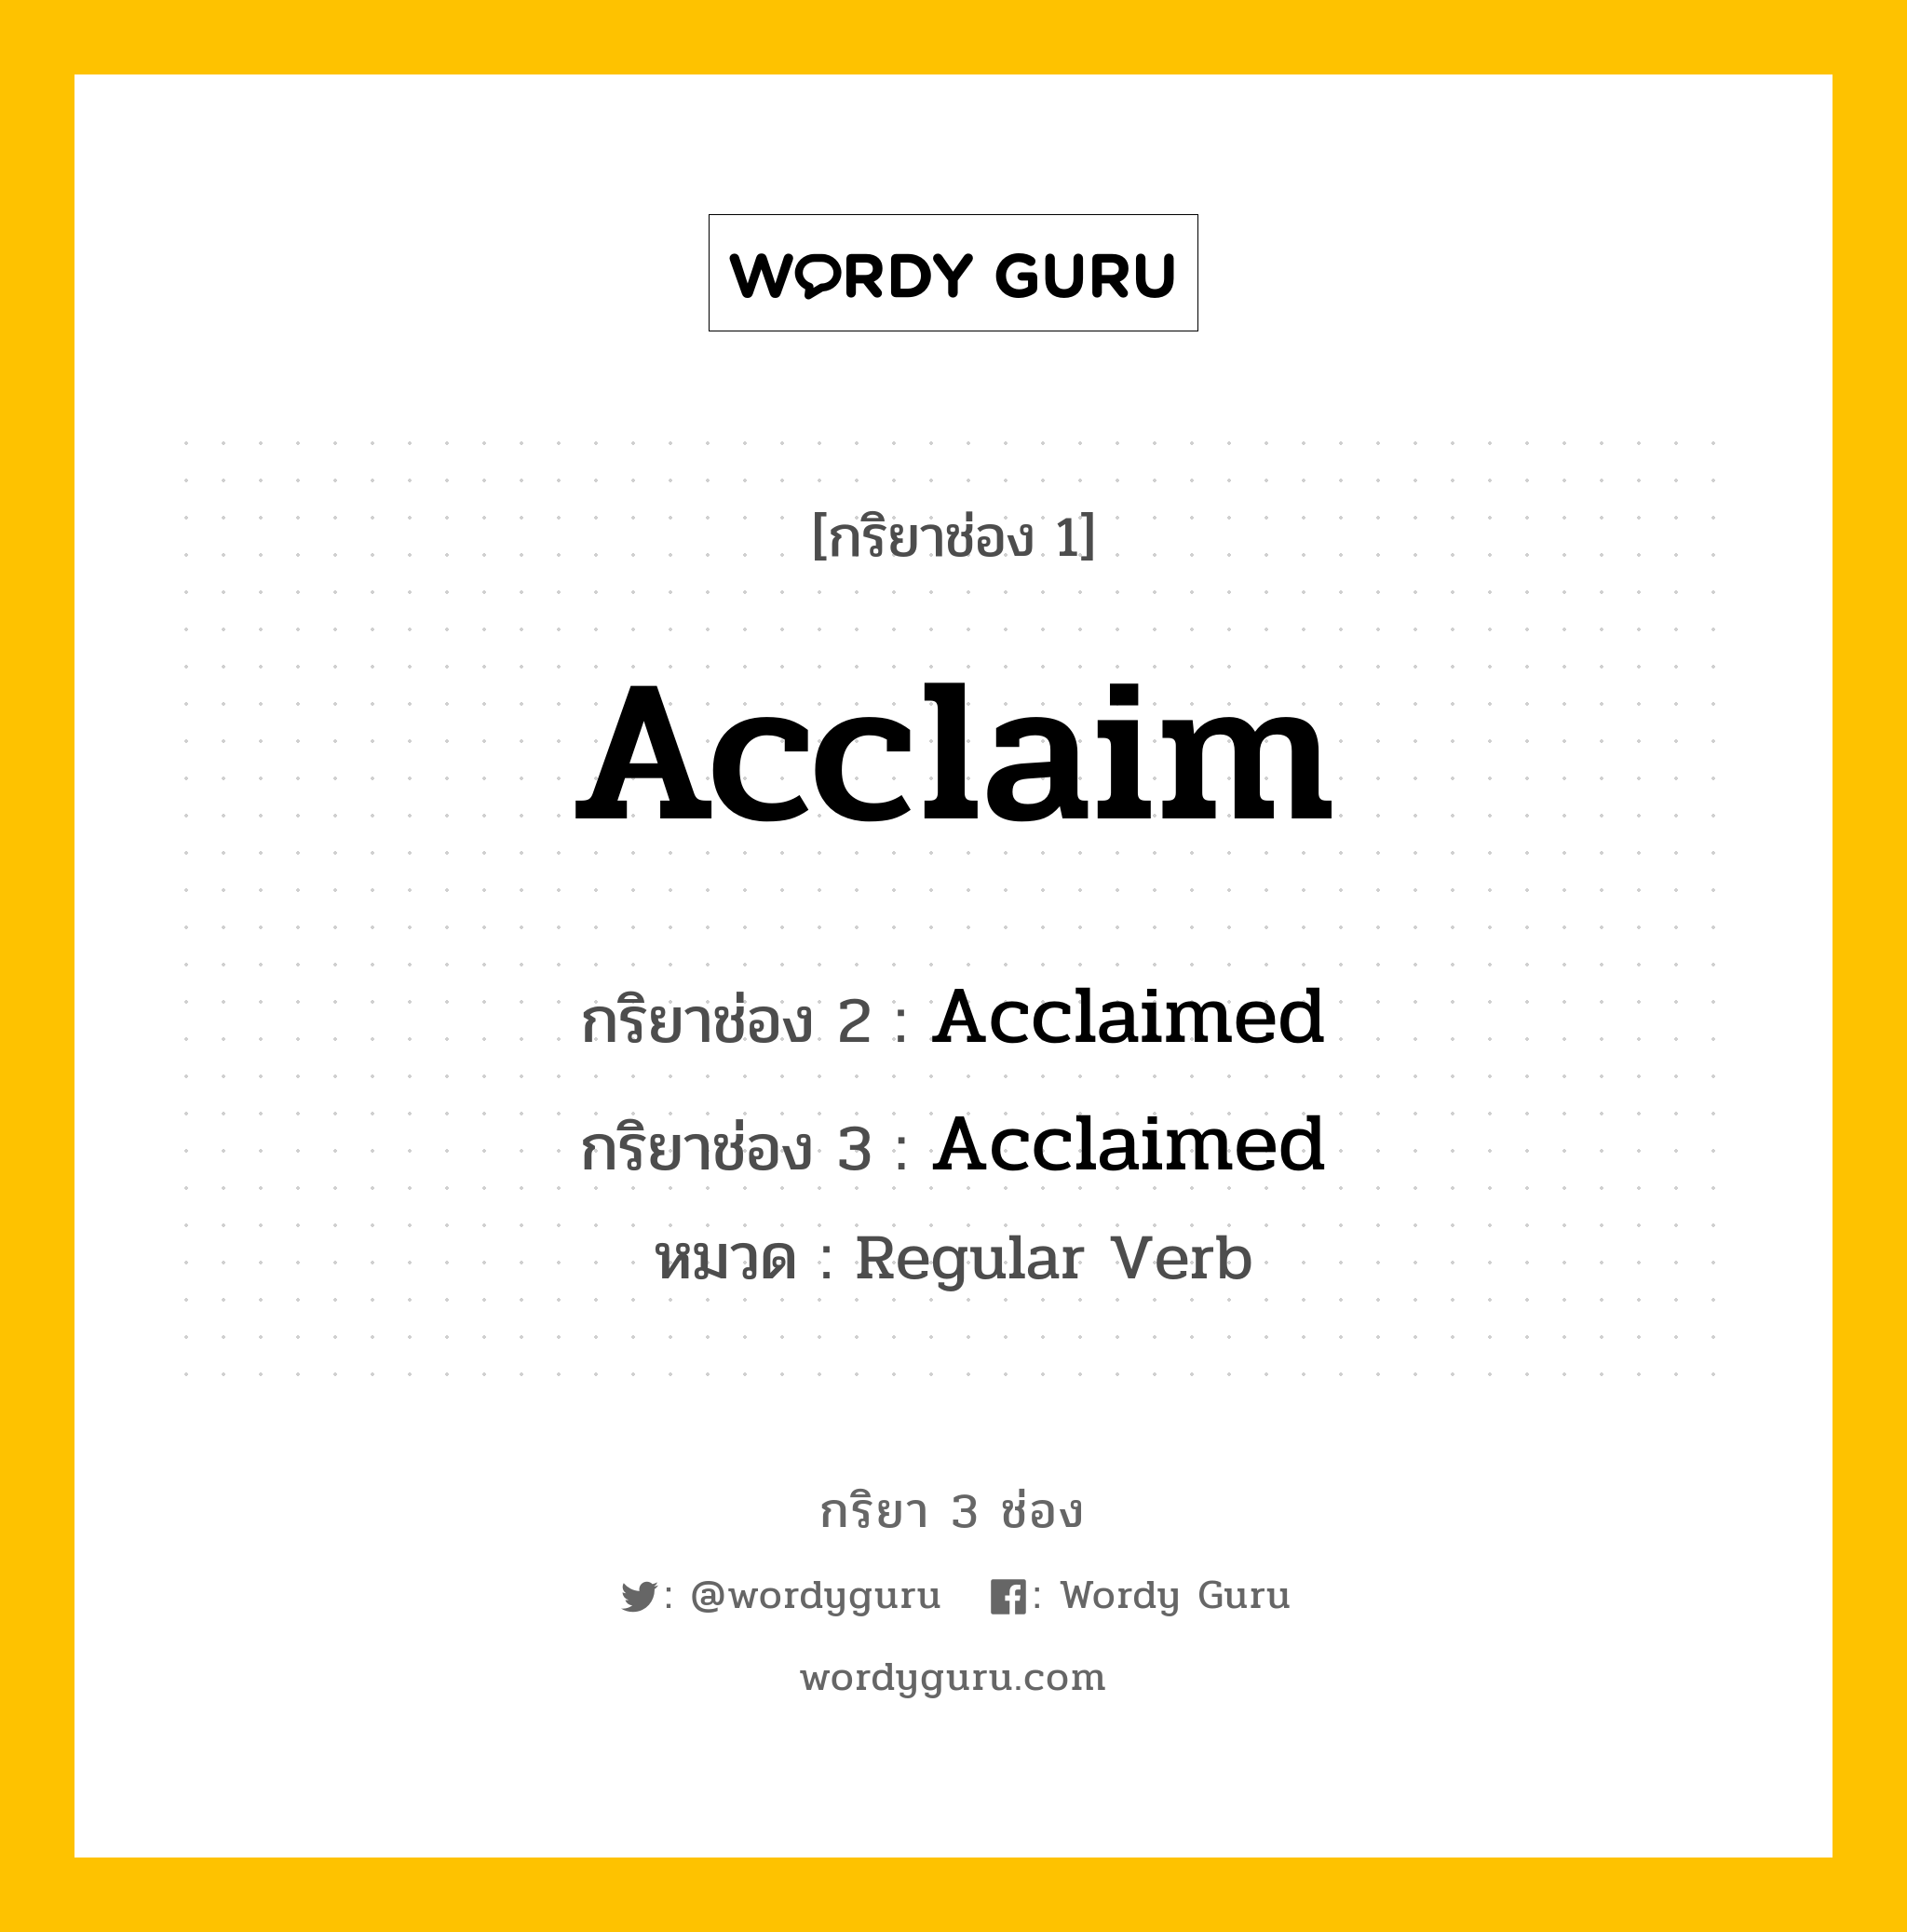 Acclaim มีกริยา 3 ช่องอะไรบ้าง? คำศัพท์ในกลุ่มประเภท Regular Verb, กริยาช่อง 1 Acclaim กริยาช่อง 2 Acclaimed กริยาช่อง 3 Acclaimed หมวด Regular Verb หมวด Regular Verb